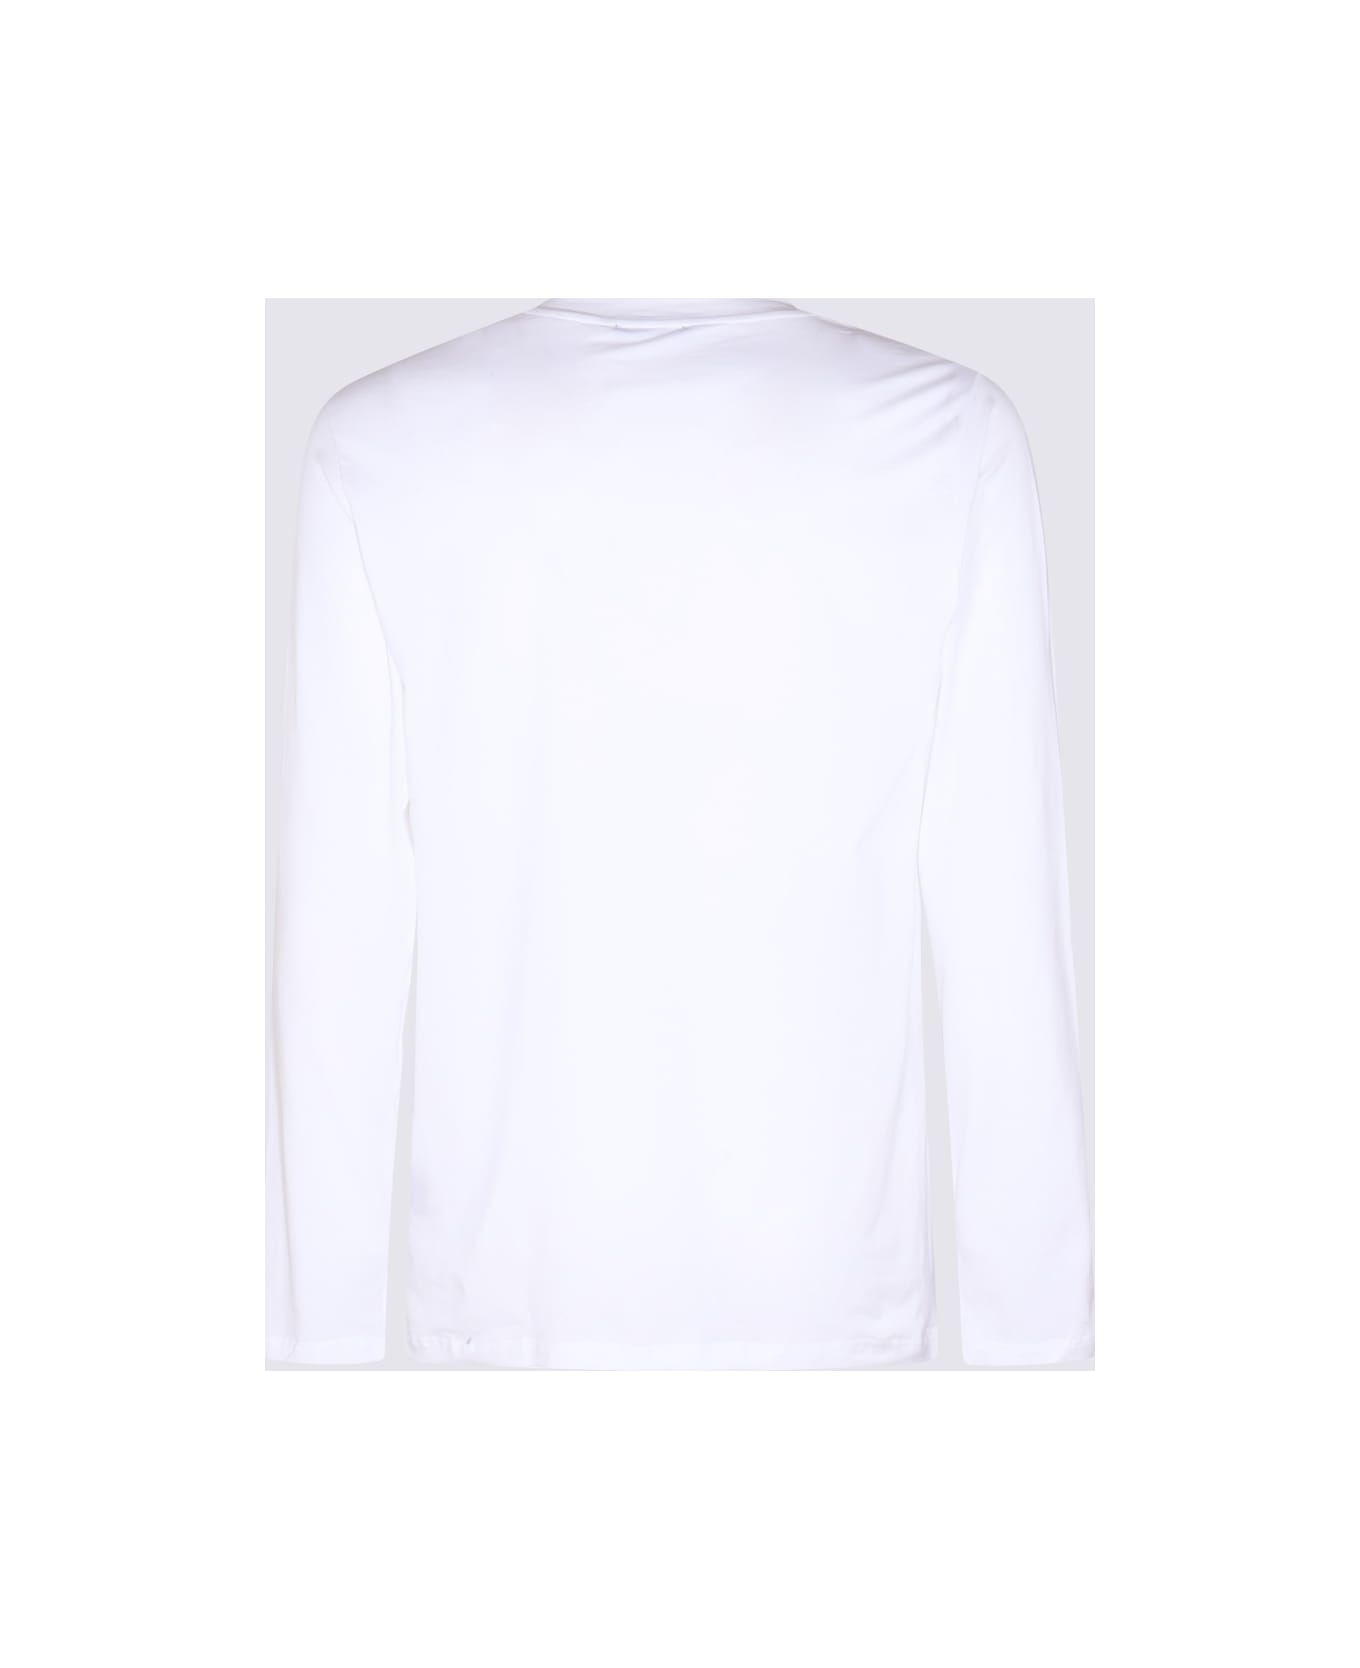 Tom Ford White Cotton Blend T-shirt - White シャツ